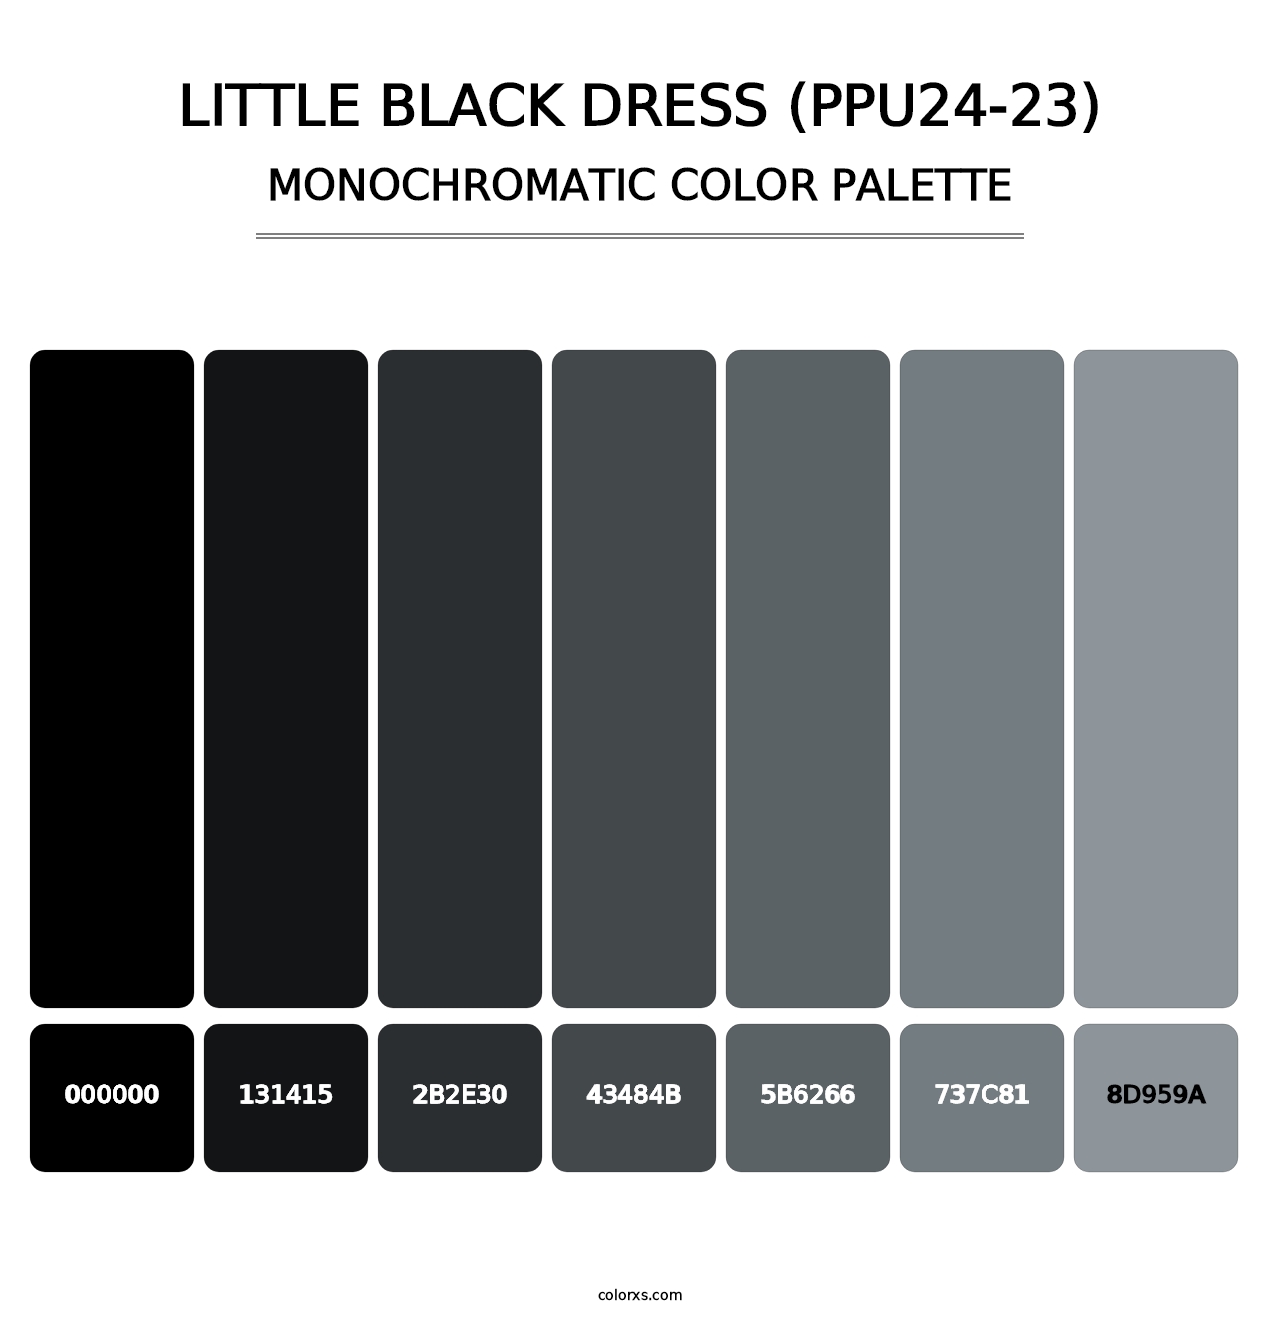 Little Black Dress (PPU24-23) - Monochromatic Color Palette